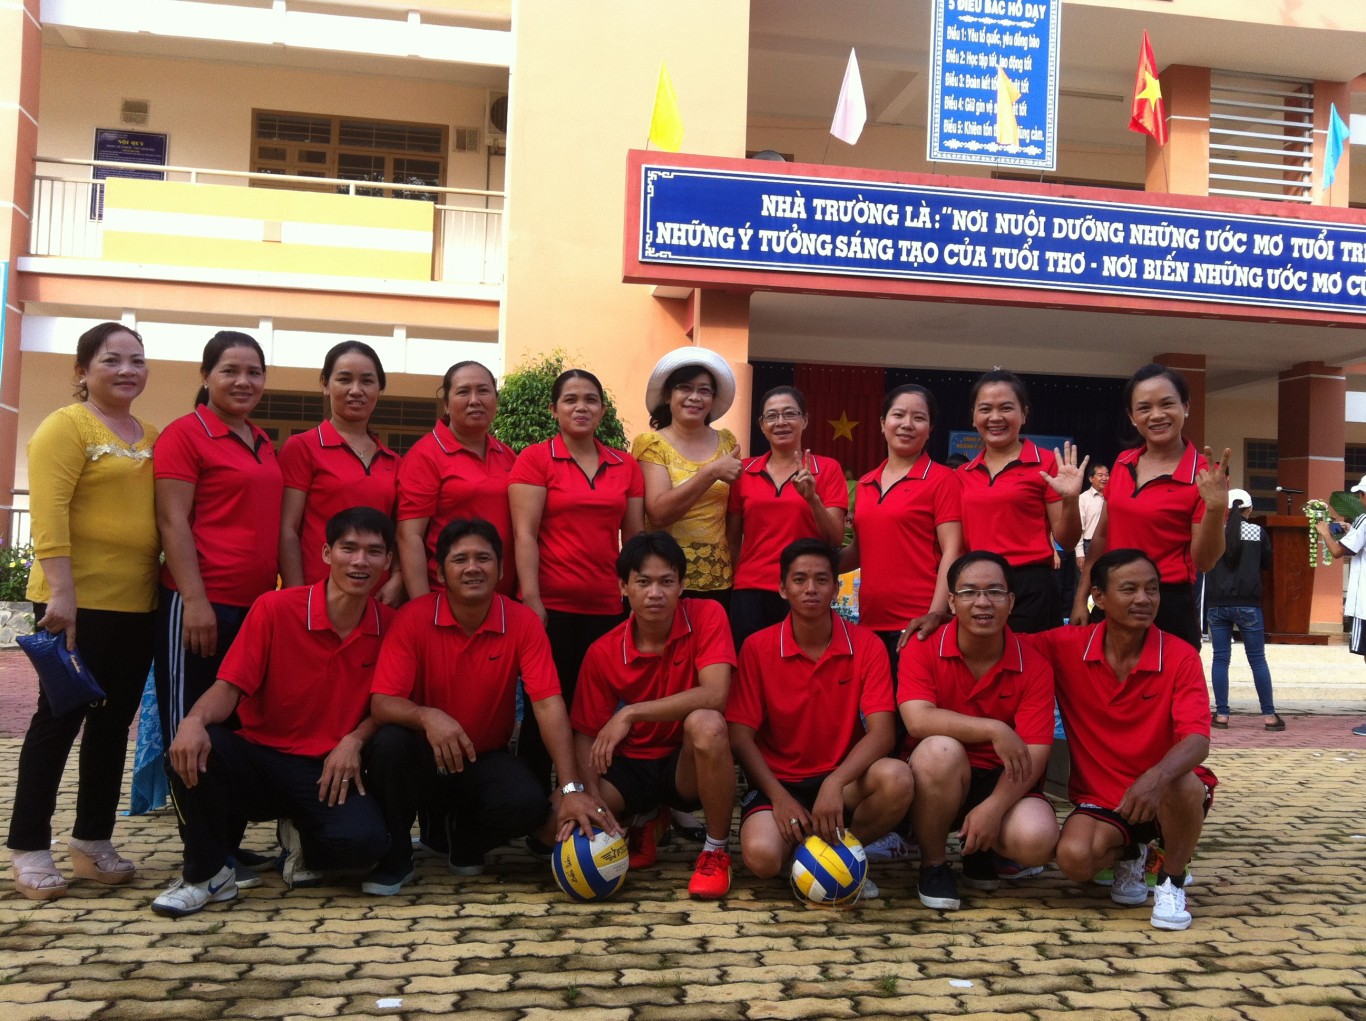 Đội hình thi bóng chuyền Nam - nữ của Trường TH Bến Súc